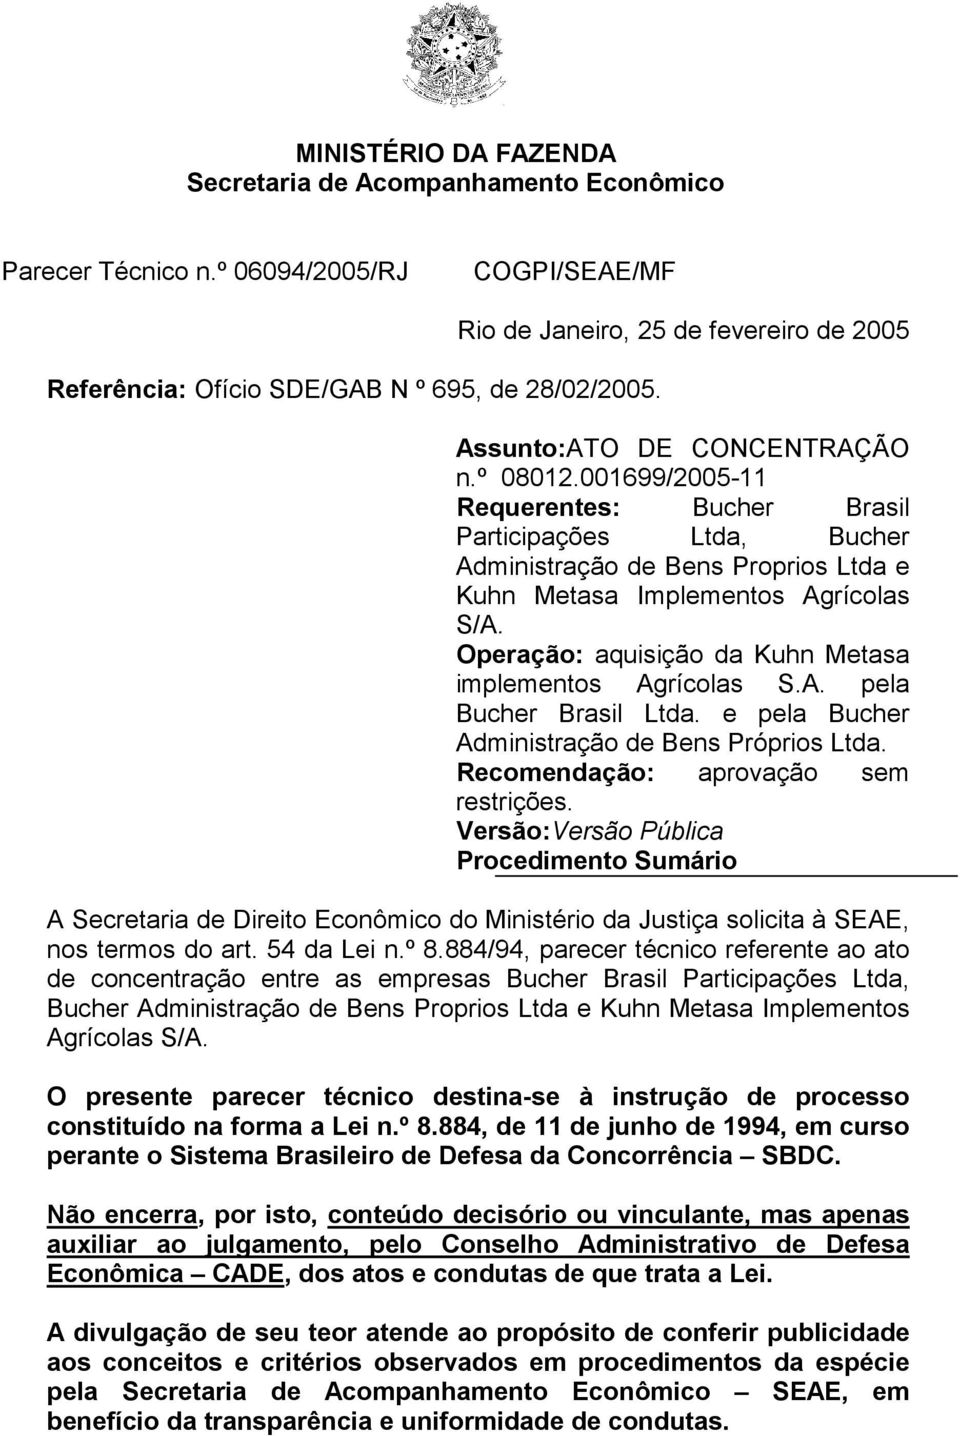 001699/2005-11 Requerentes: Bucher Brasil Participações Ltda, Bucher Administração de Bens Proprios Ltda e Kuhn Metasa Implementos Agrícolas S/A.